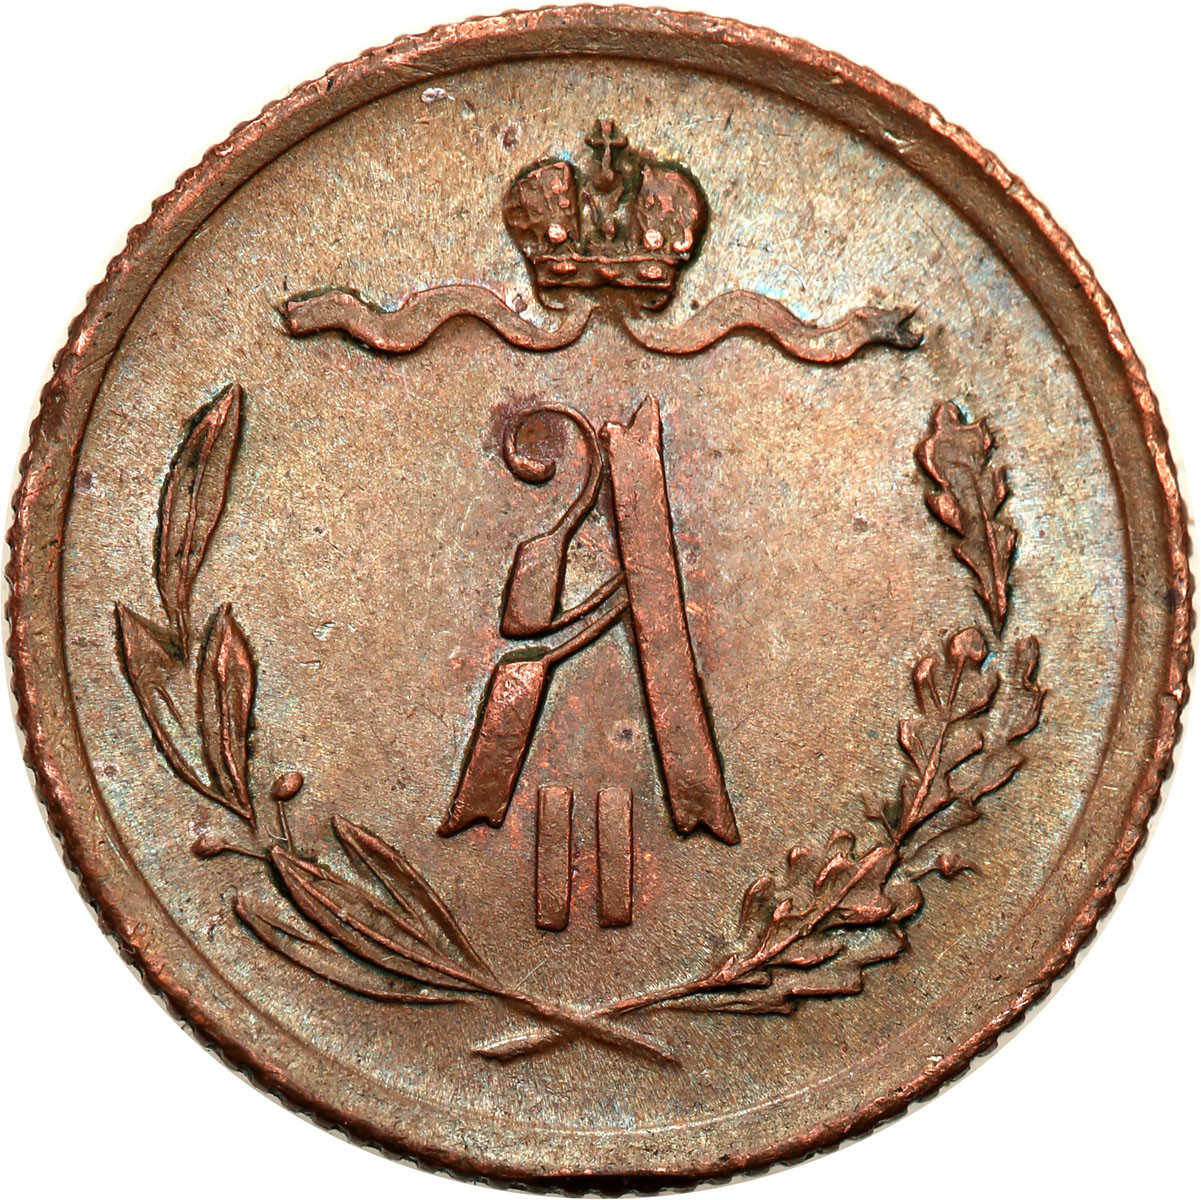 Rosja, Aleksander II. 1/2 kopiejki 1878 СПБ, Petersburg